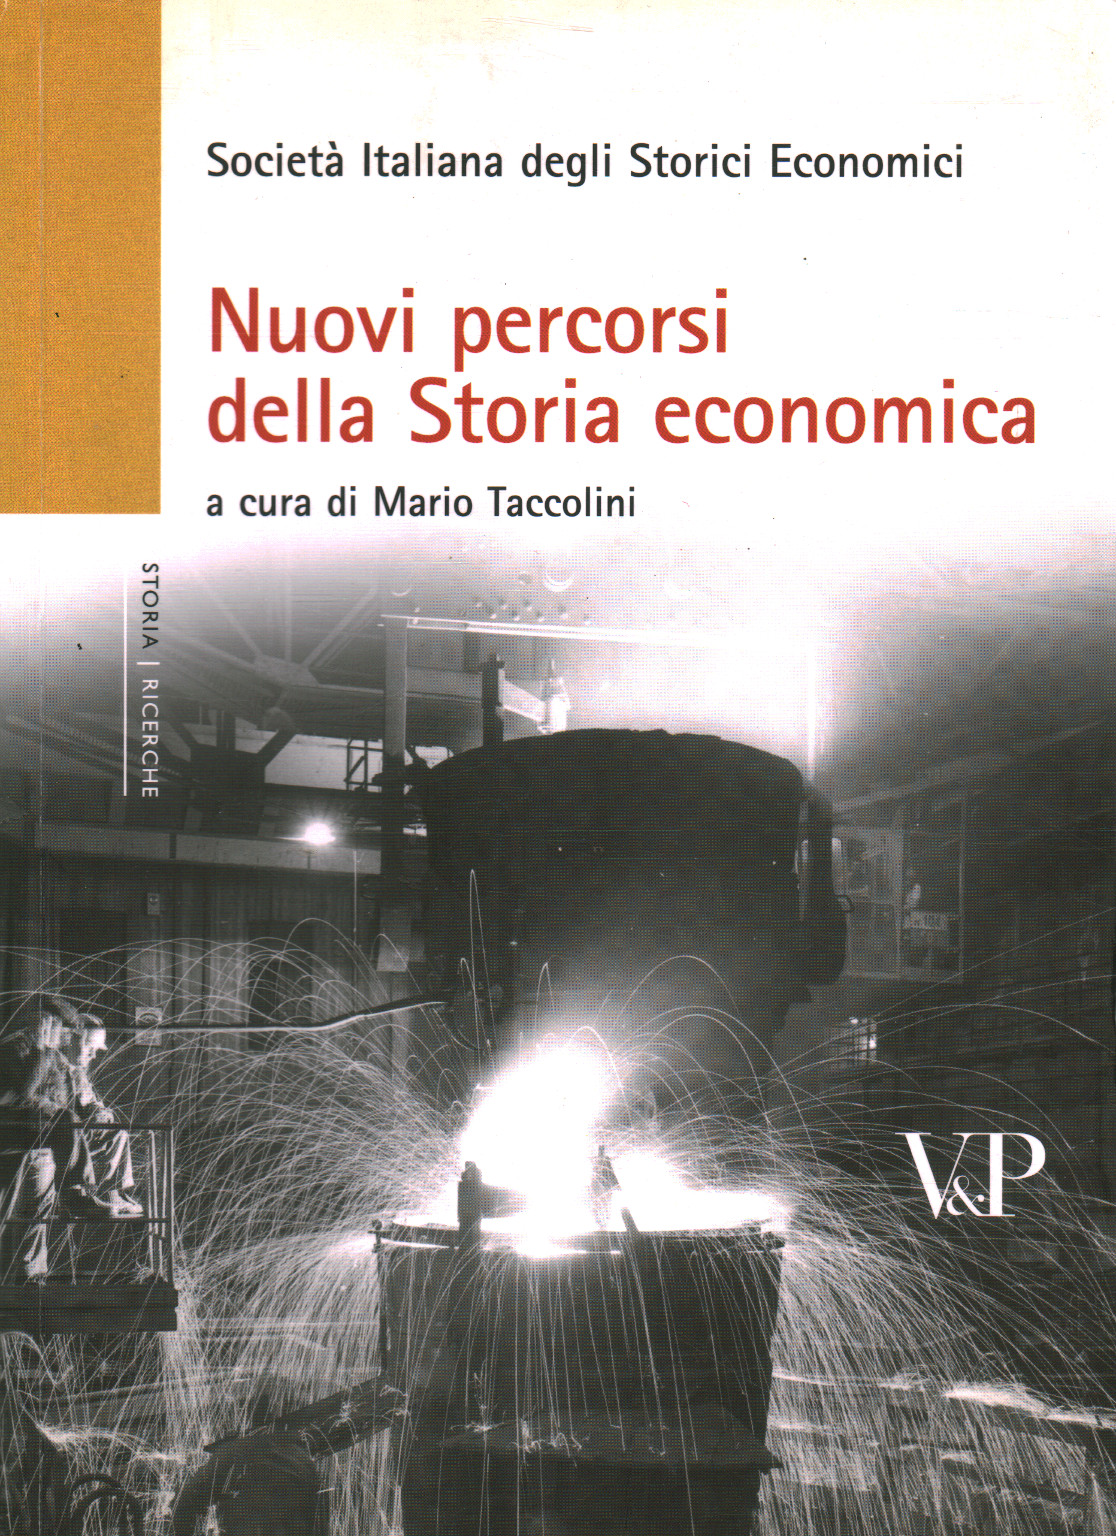 Nuovi percorsi della Storia economica, Mario Taccolini